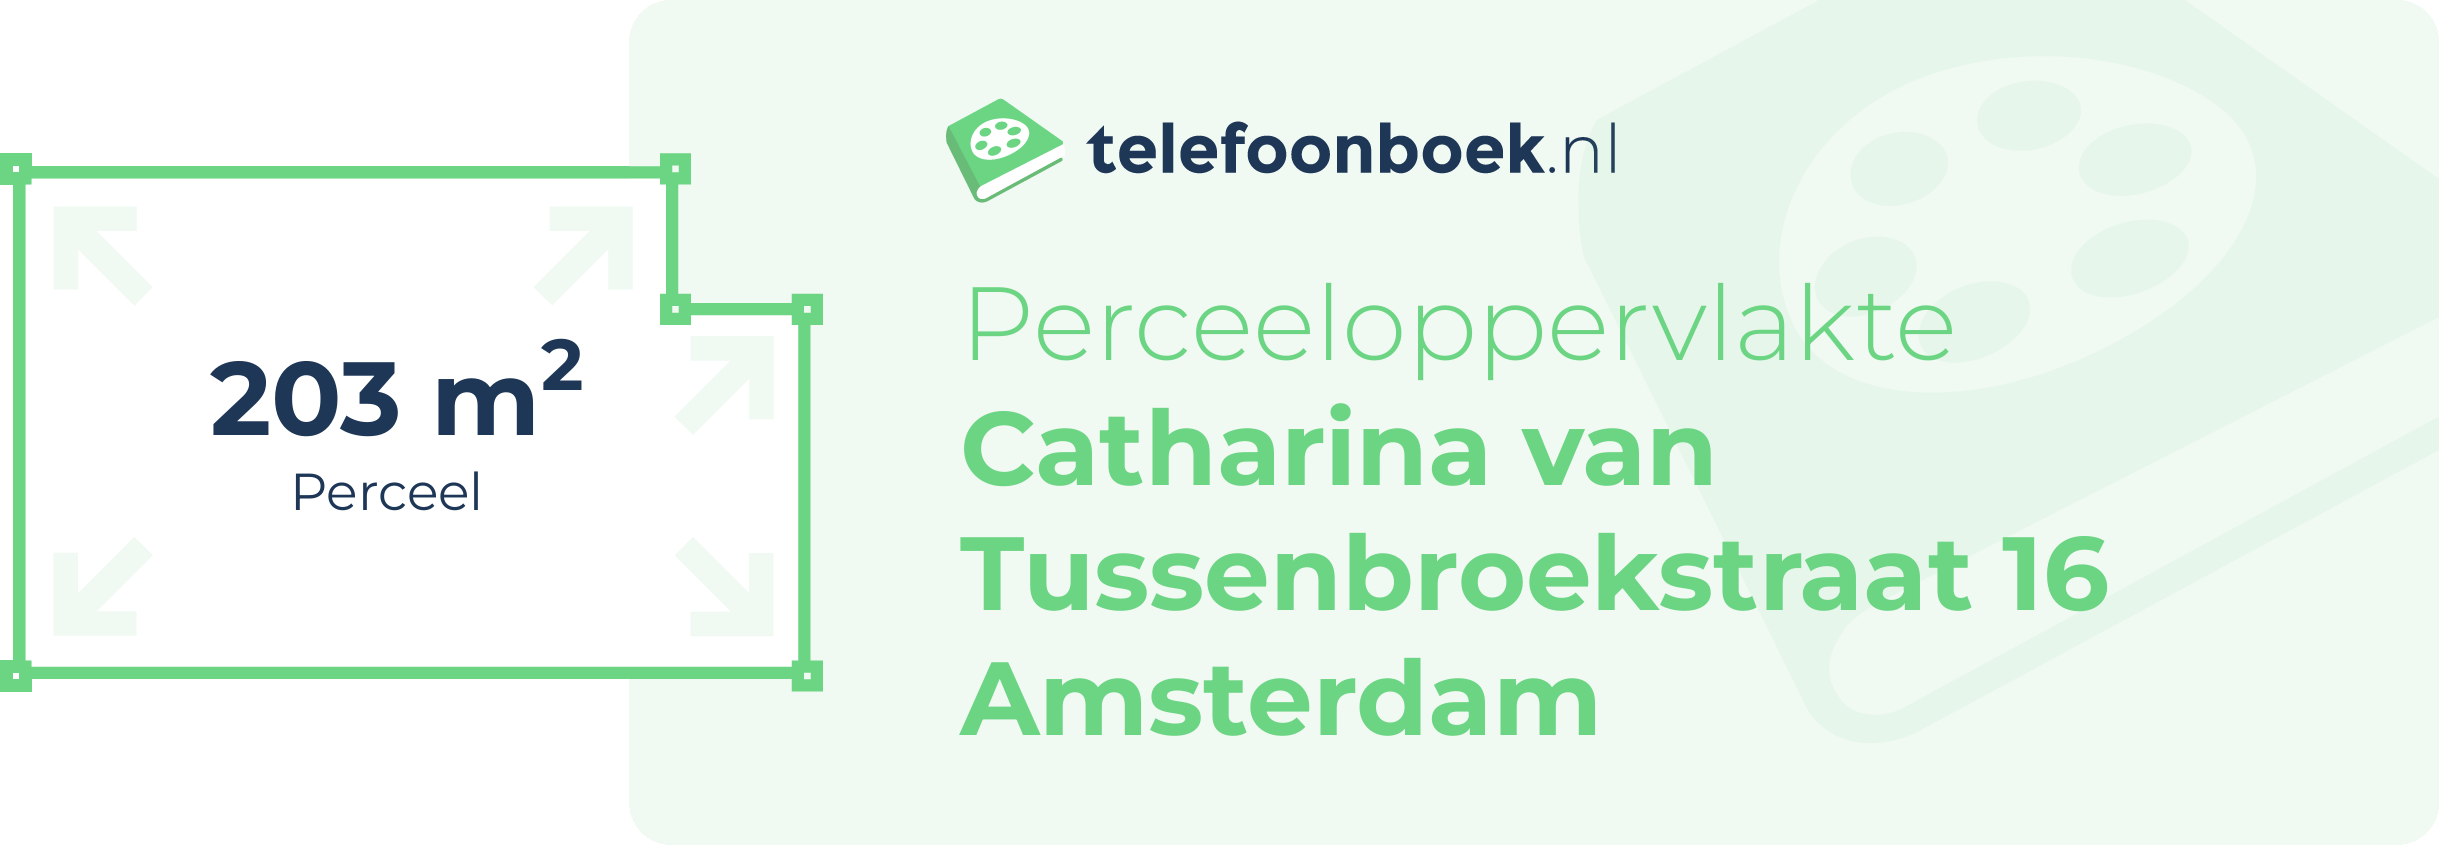 Perceeloppervlakte Catharina Van Tussenbroekstraat 16 Amsterdam